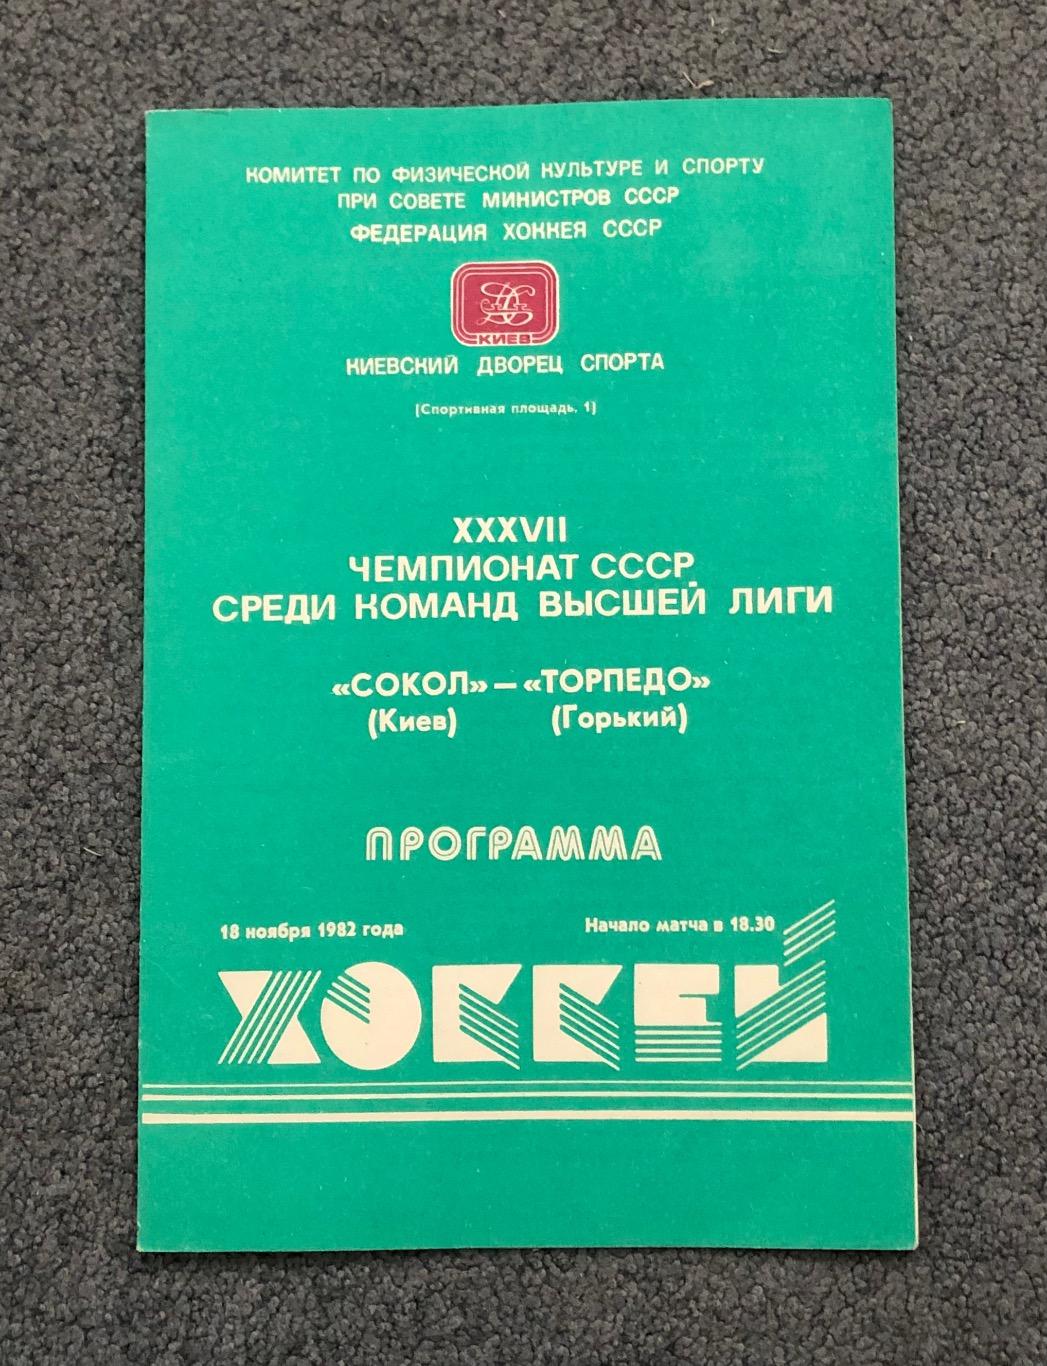 Сокол Киев - Торпедо Горький, 18.11.1982